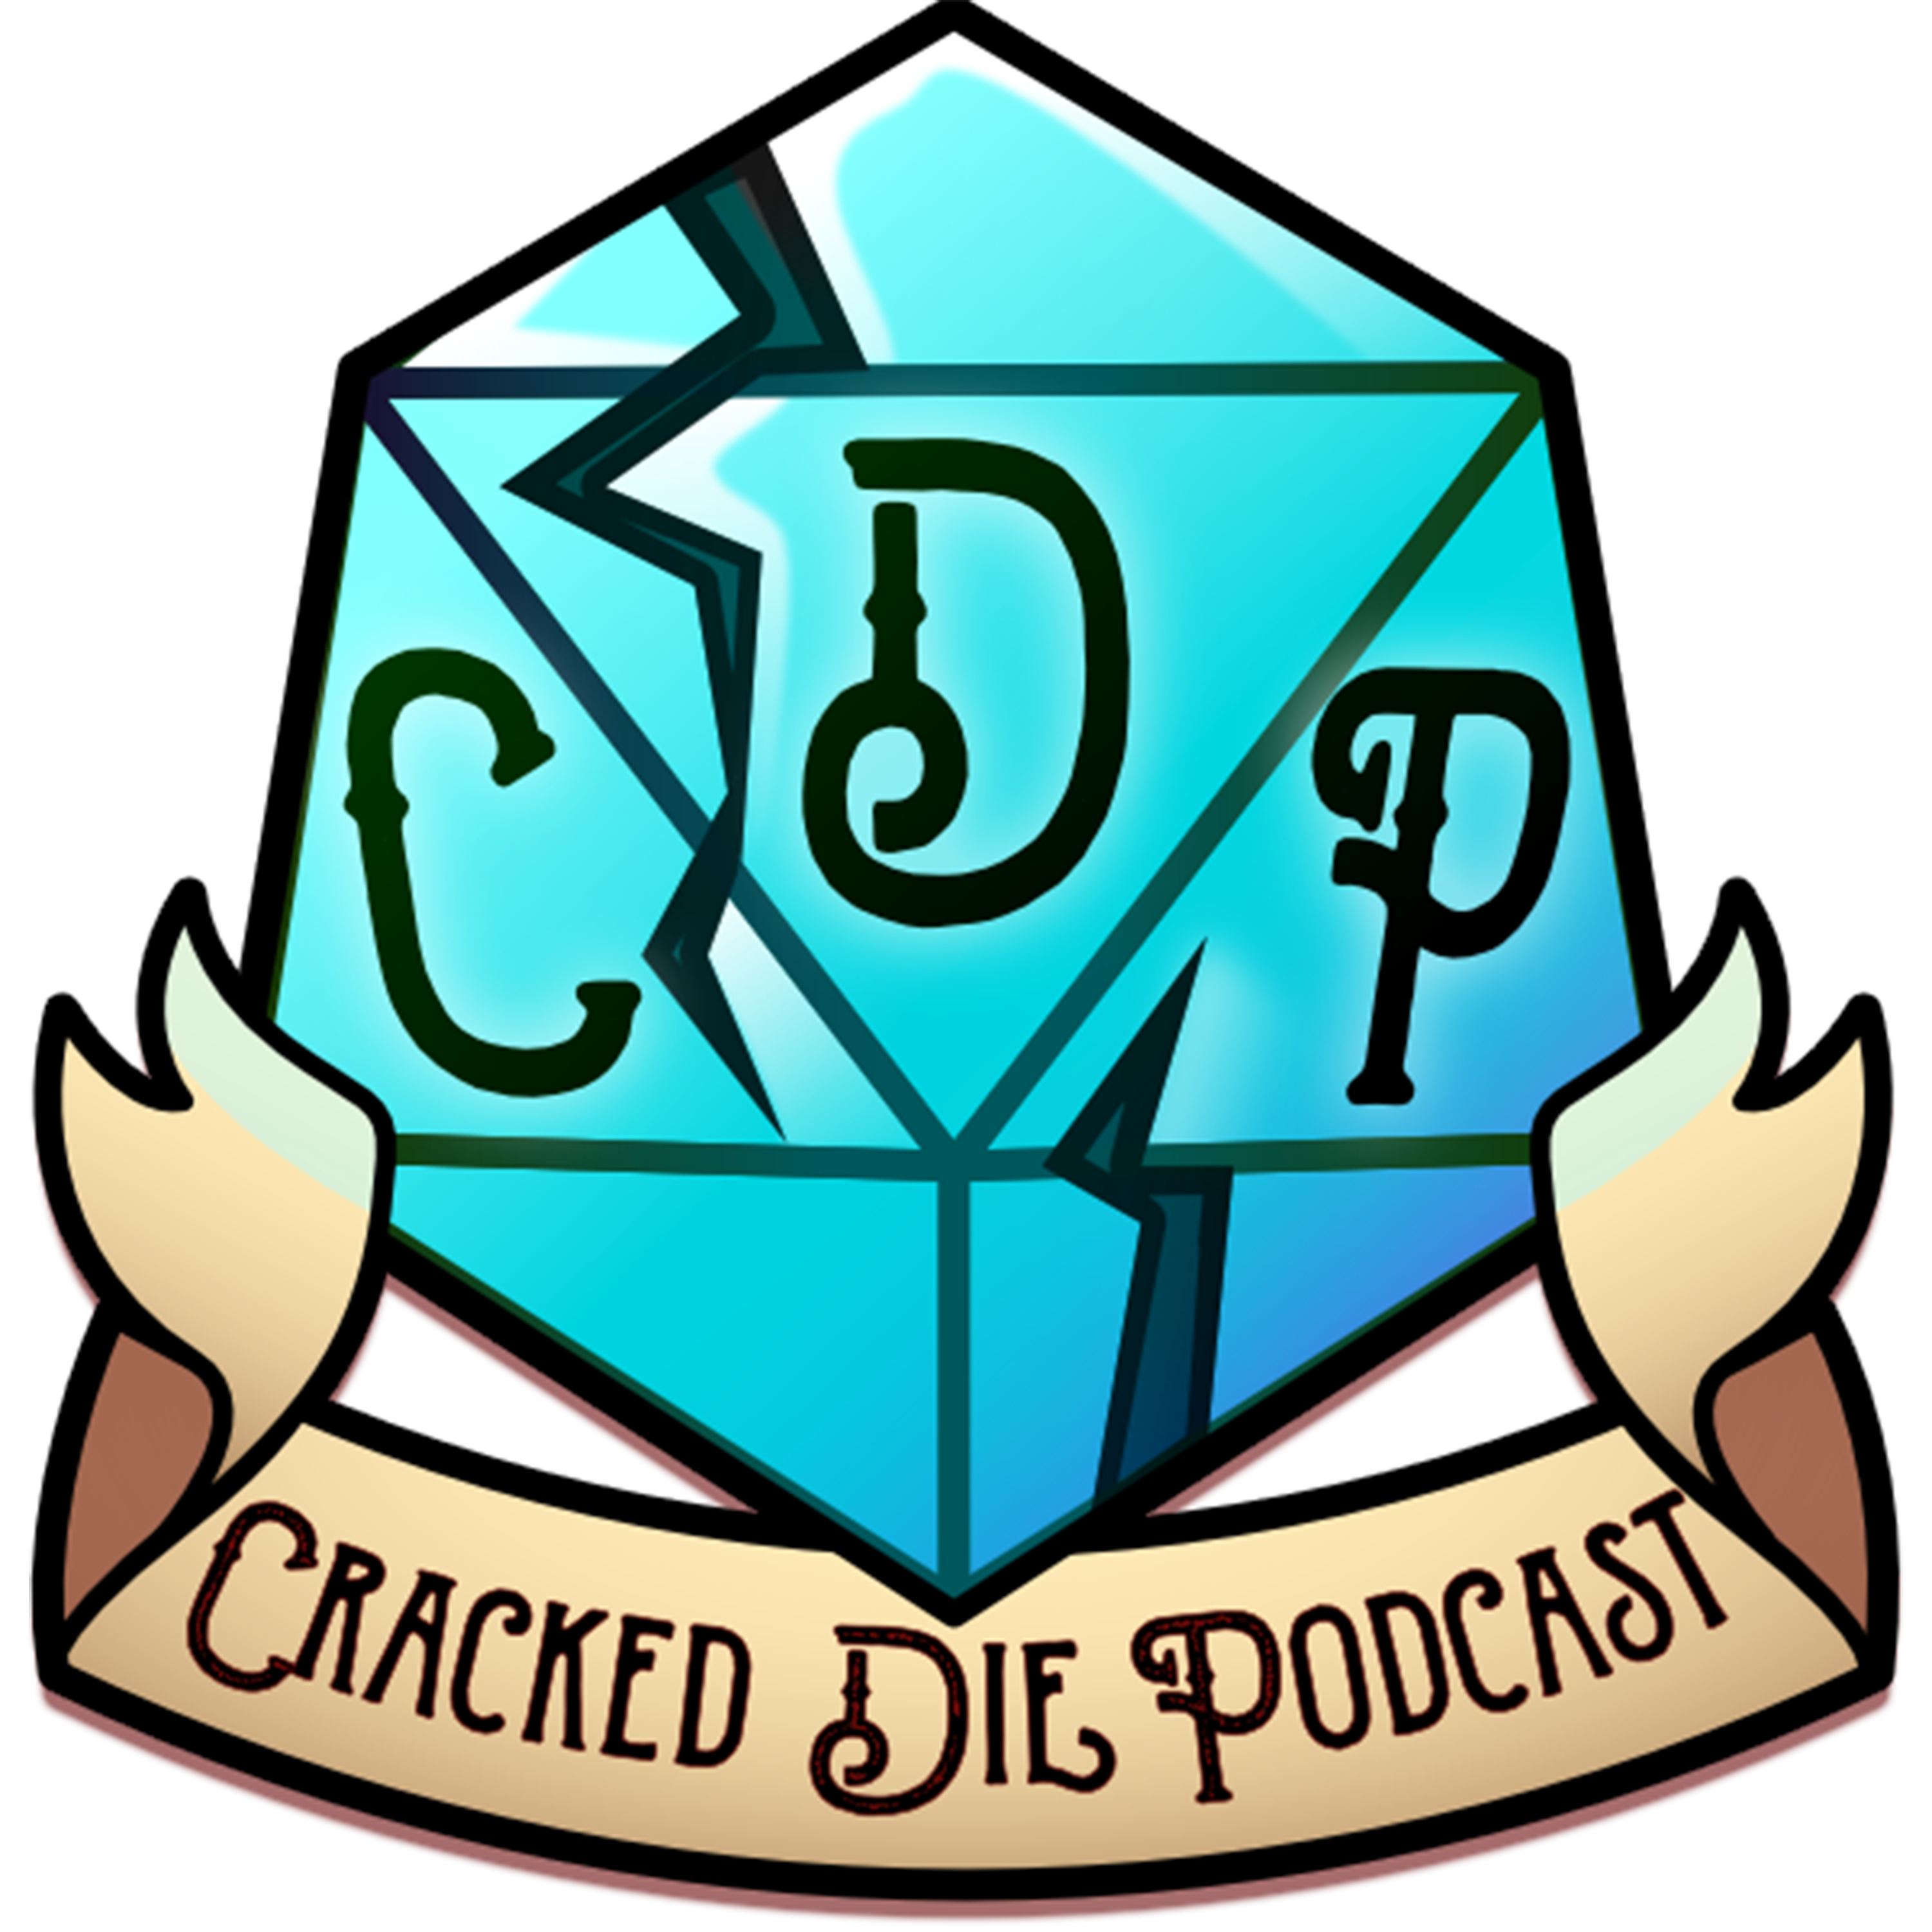 The Cracked Die Podcast - Episode 121 - Wonderwall